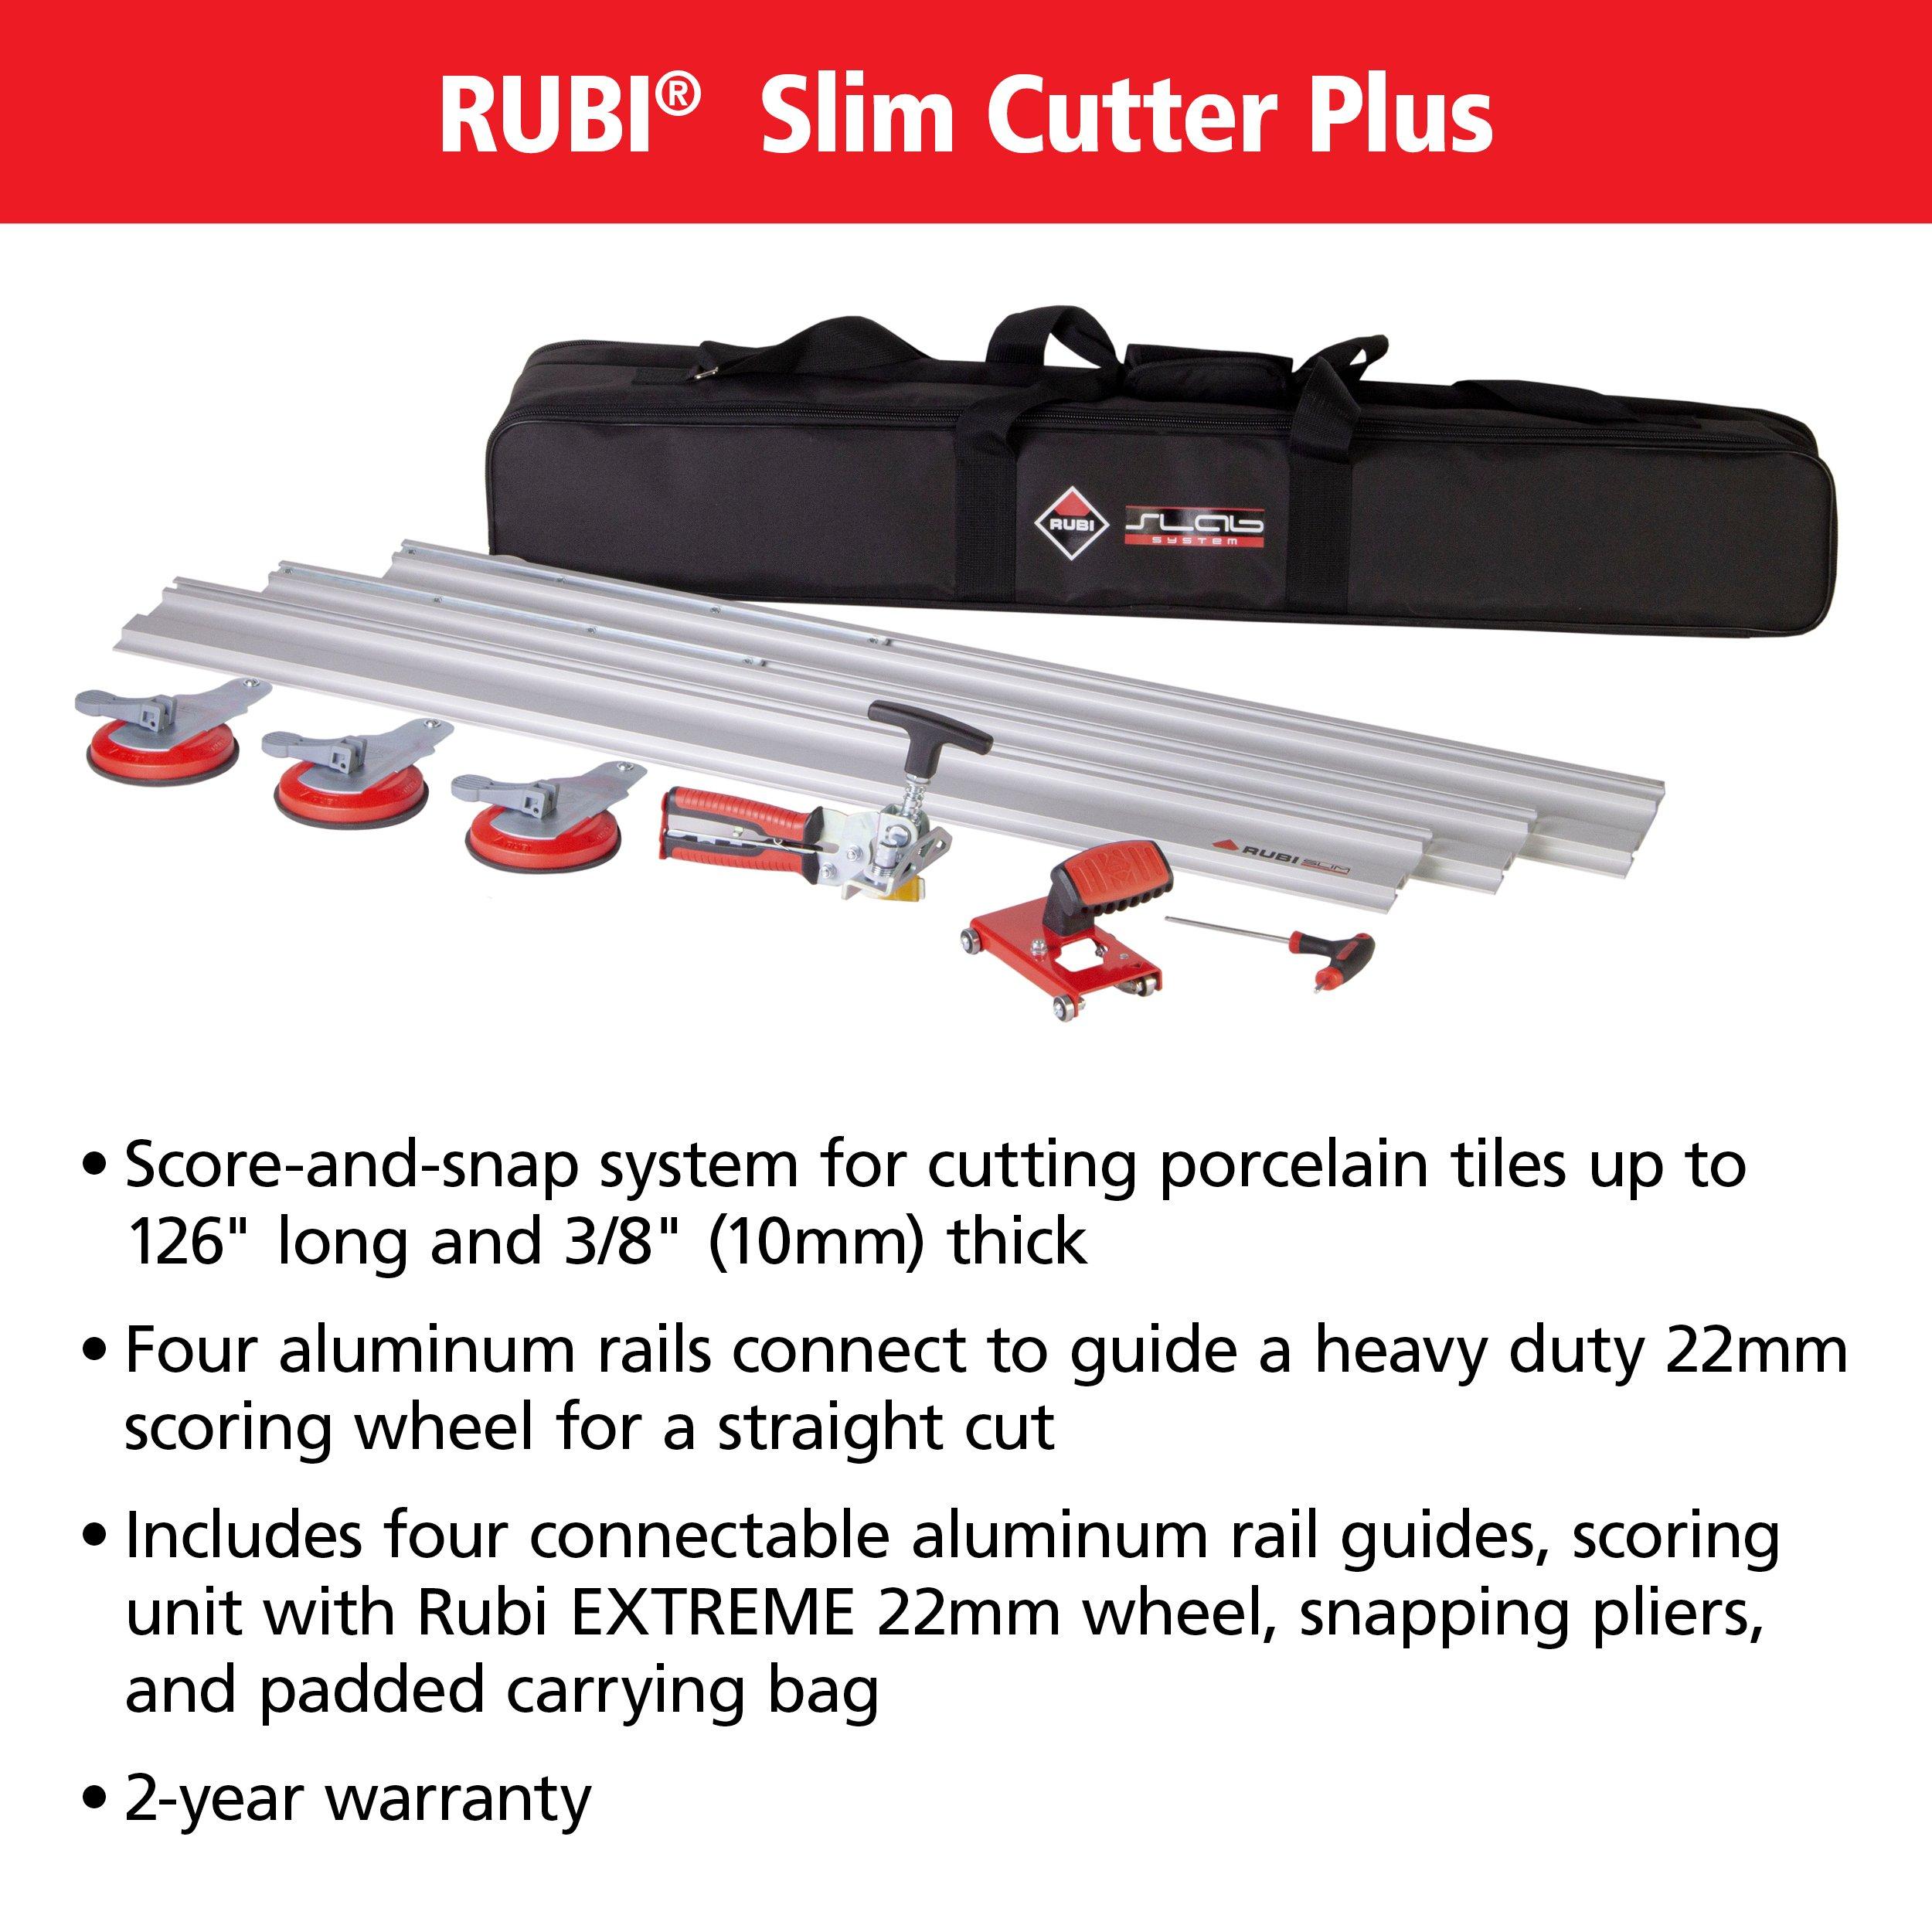 Rubi Slim Cutter Plus